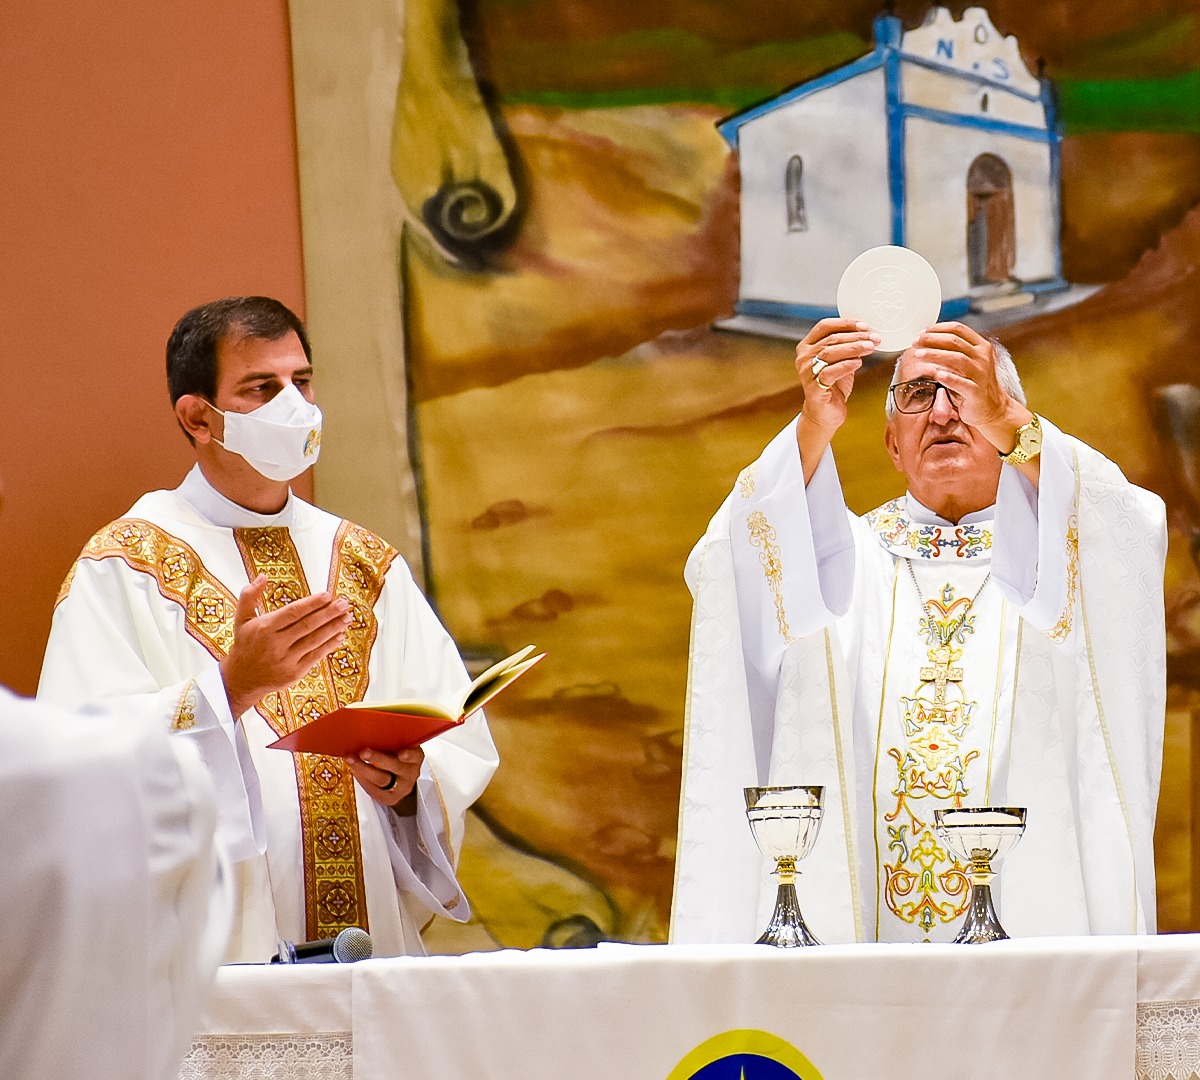 Dom Décio e Padre Edgar Rigoni presidem celebrações na Festa da Penha 2021